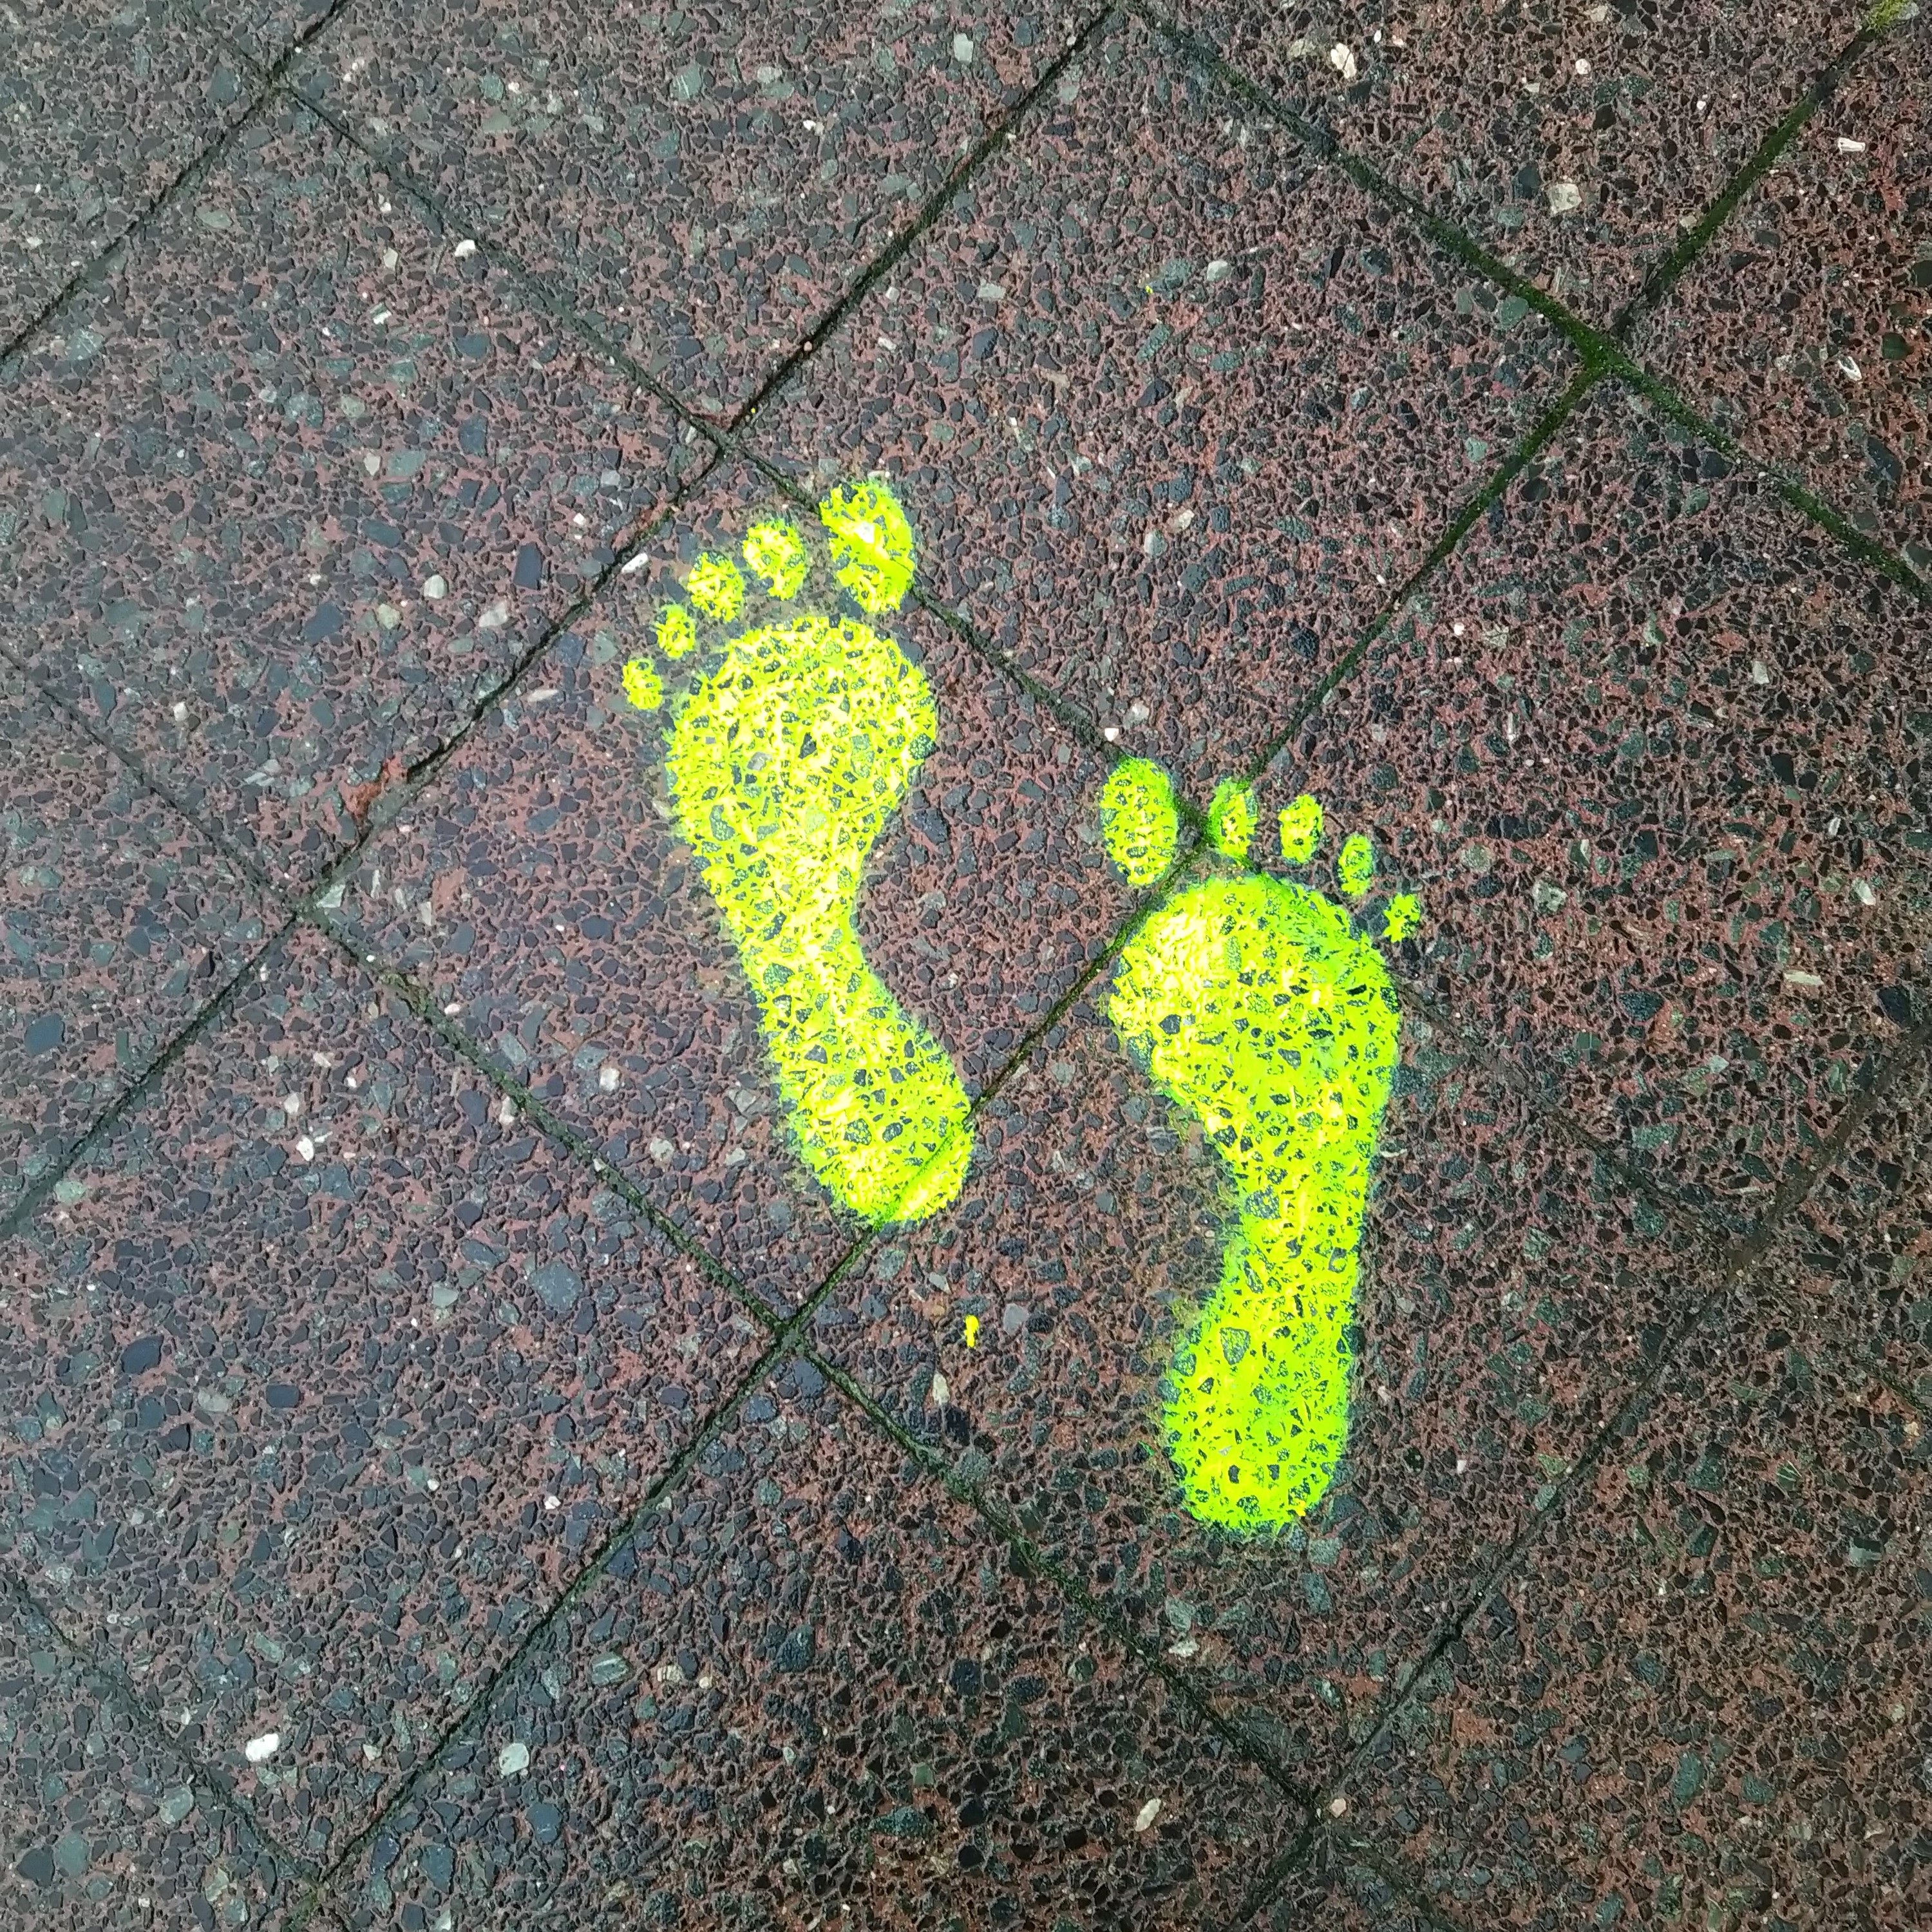 Neongelb-leuchtende Fußspuren auf dem Asphalt.